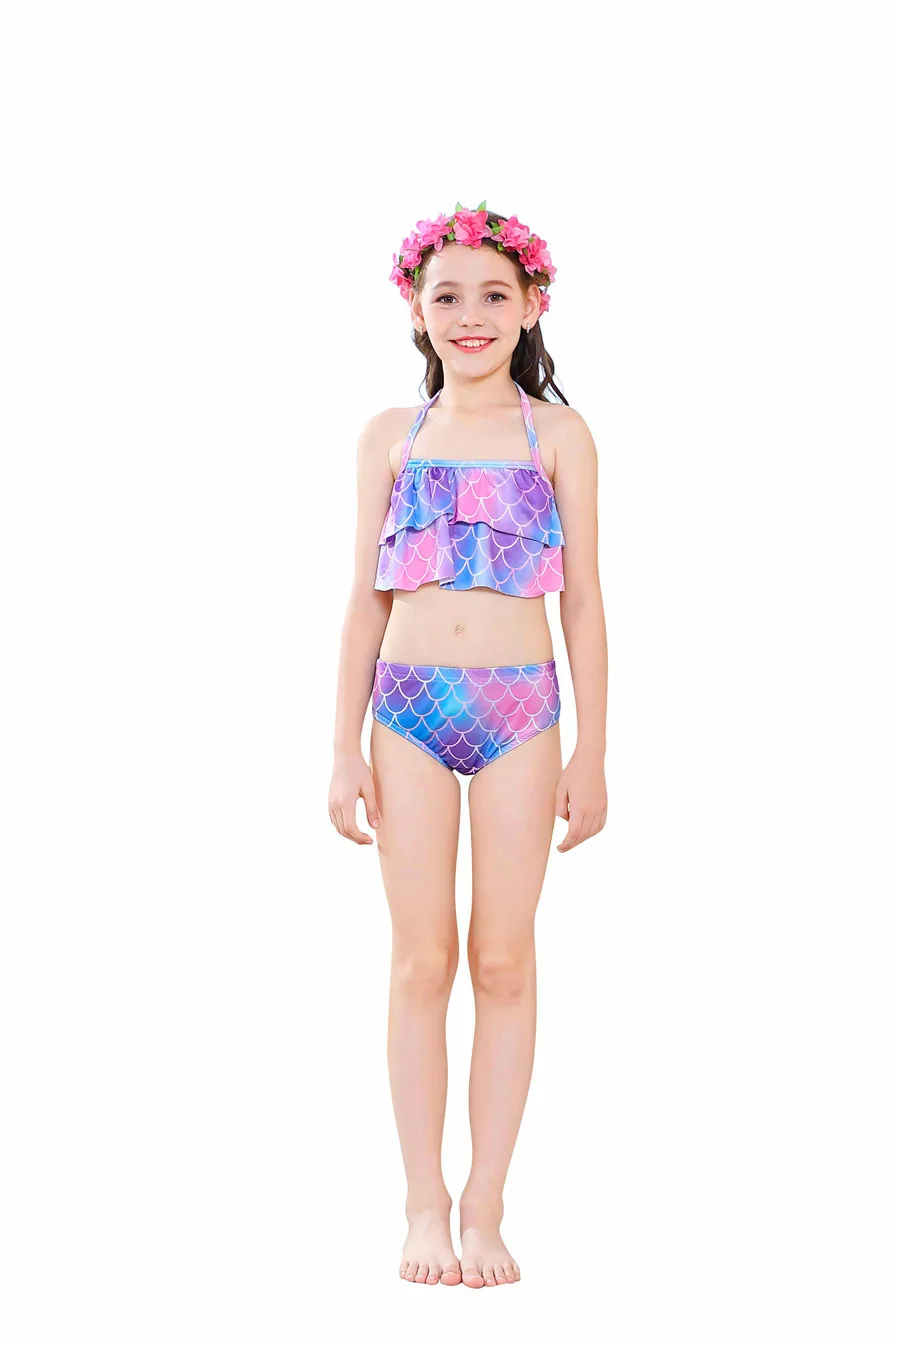 Детский купальник с хвостом Русалочки с плавниками, топы, бикини, костюм для девочек, Одноцветный купальник, костюмы на Хэллоуин, косплей, одежда для плавания, Флиппер